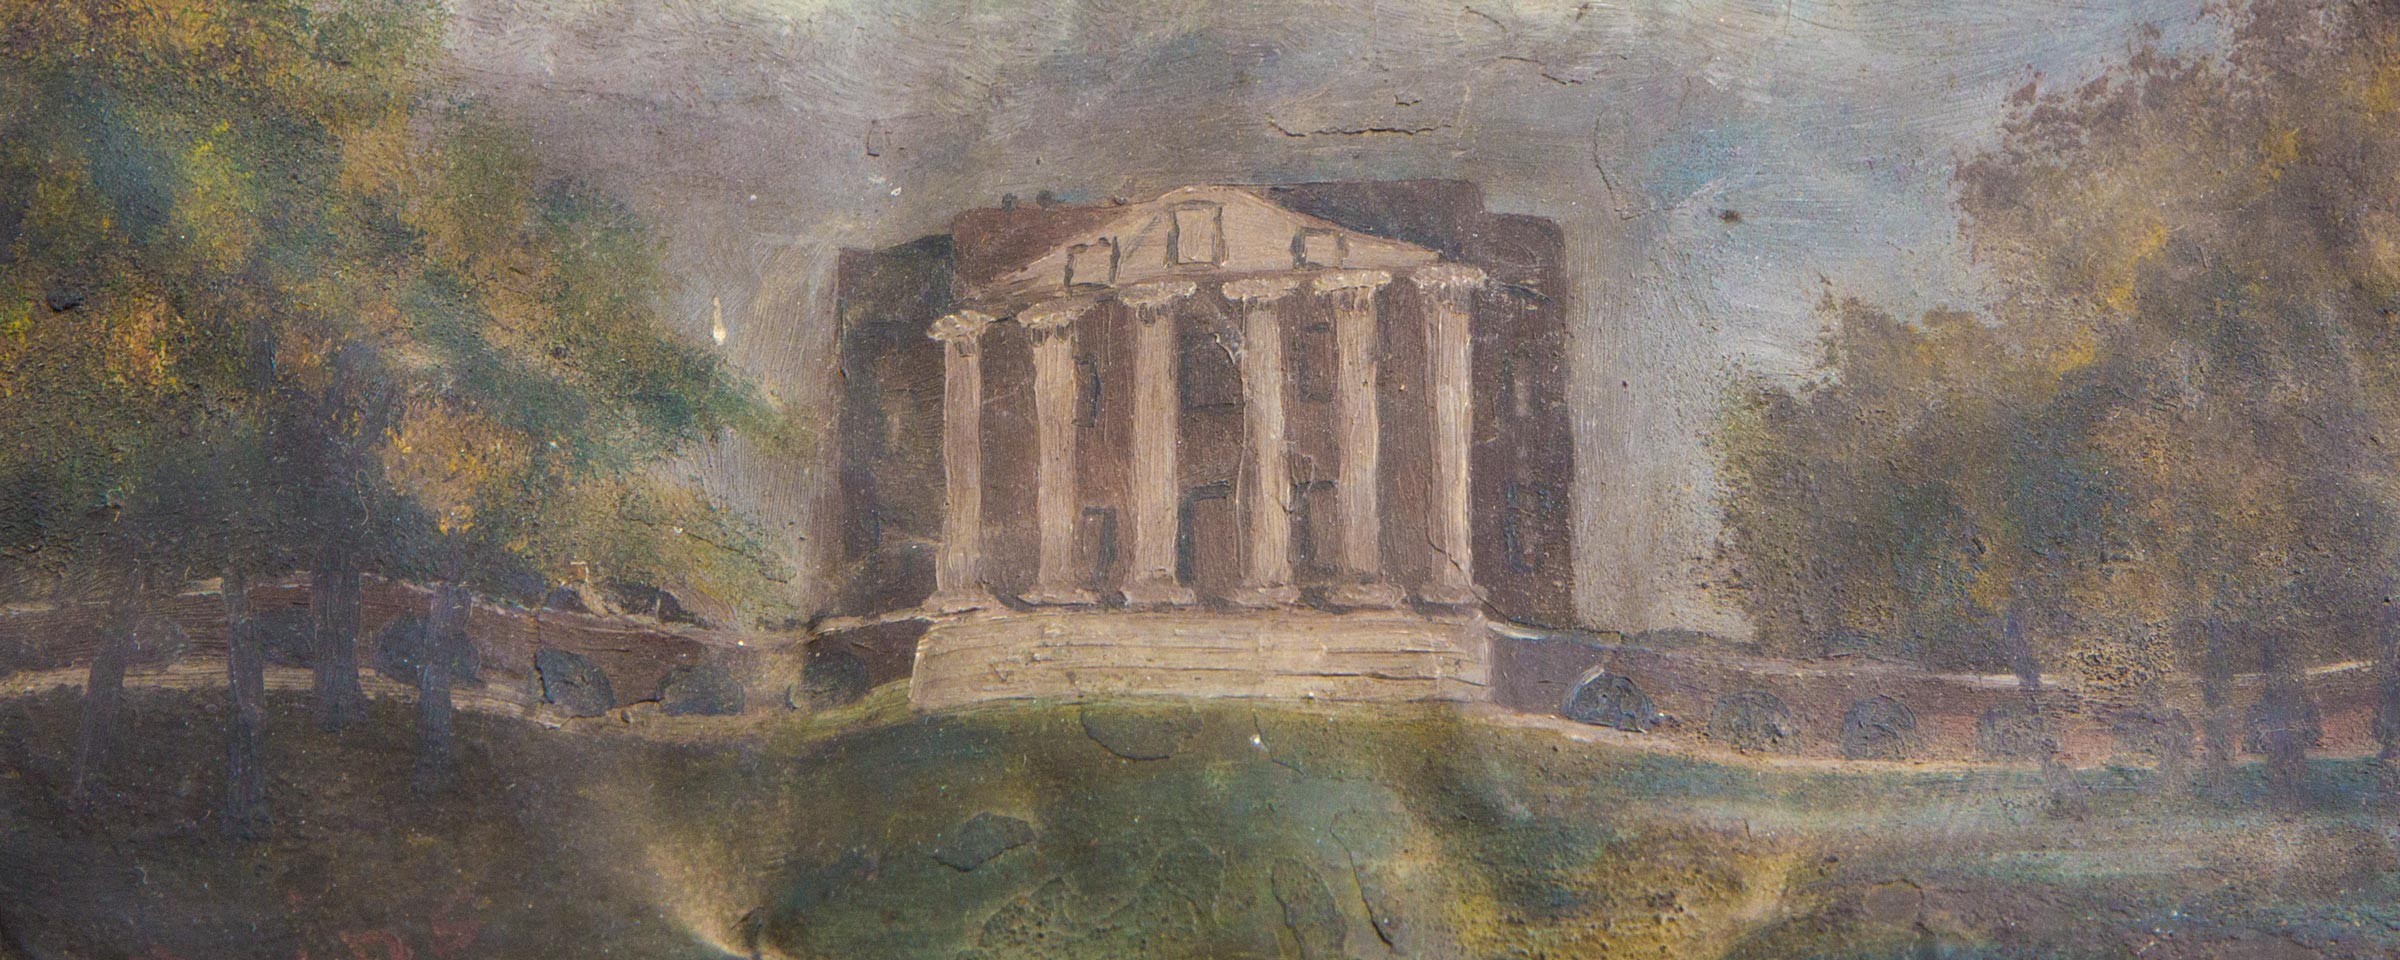 Painting of the UVA Rotunda